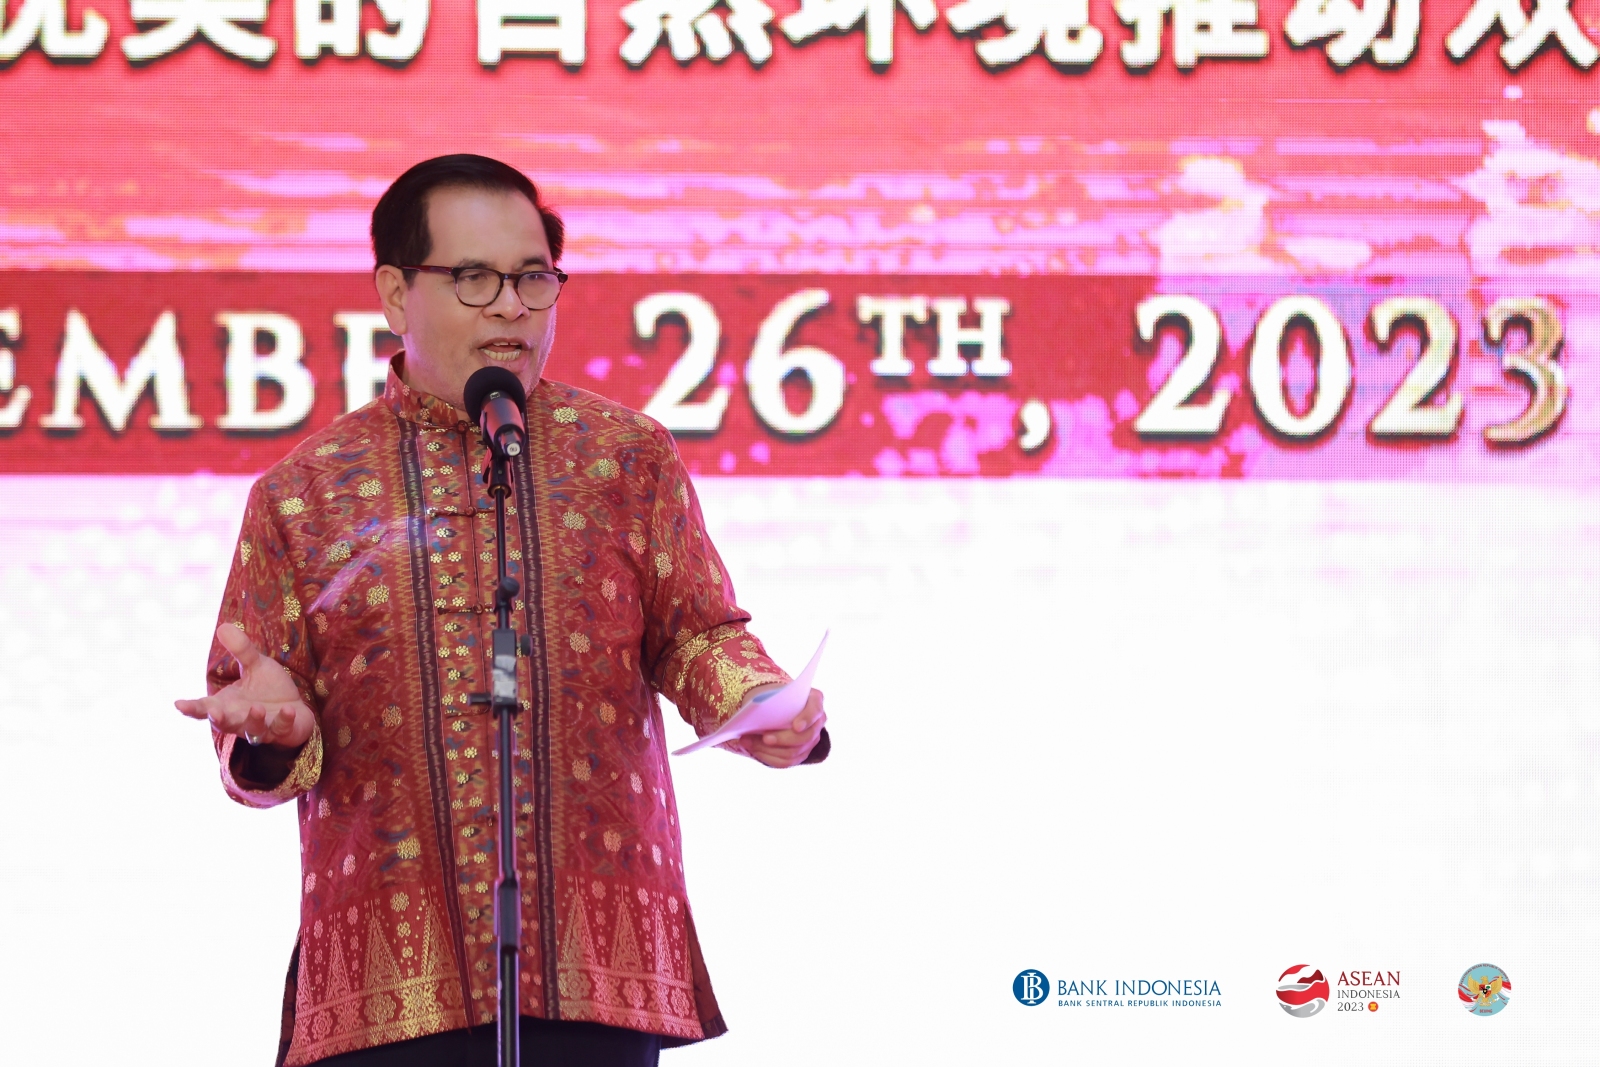 印度尼西亚共和国驻华大使馆与印度尼西亚央行联合推广 印尼文化并挖掘经济潜力